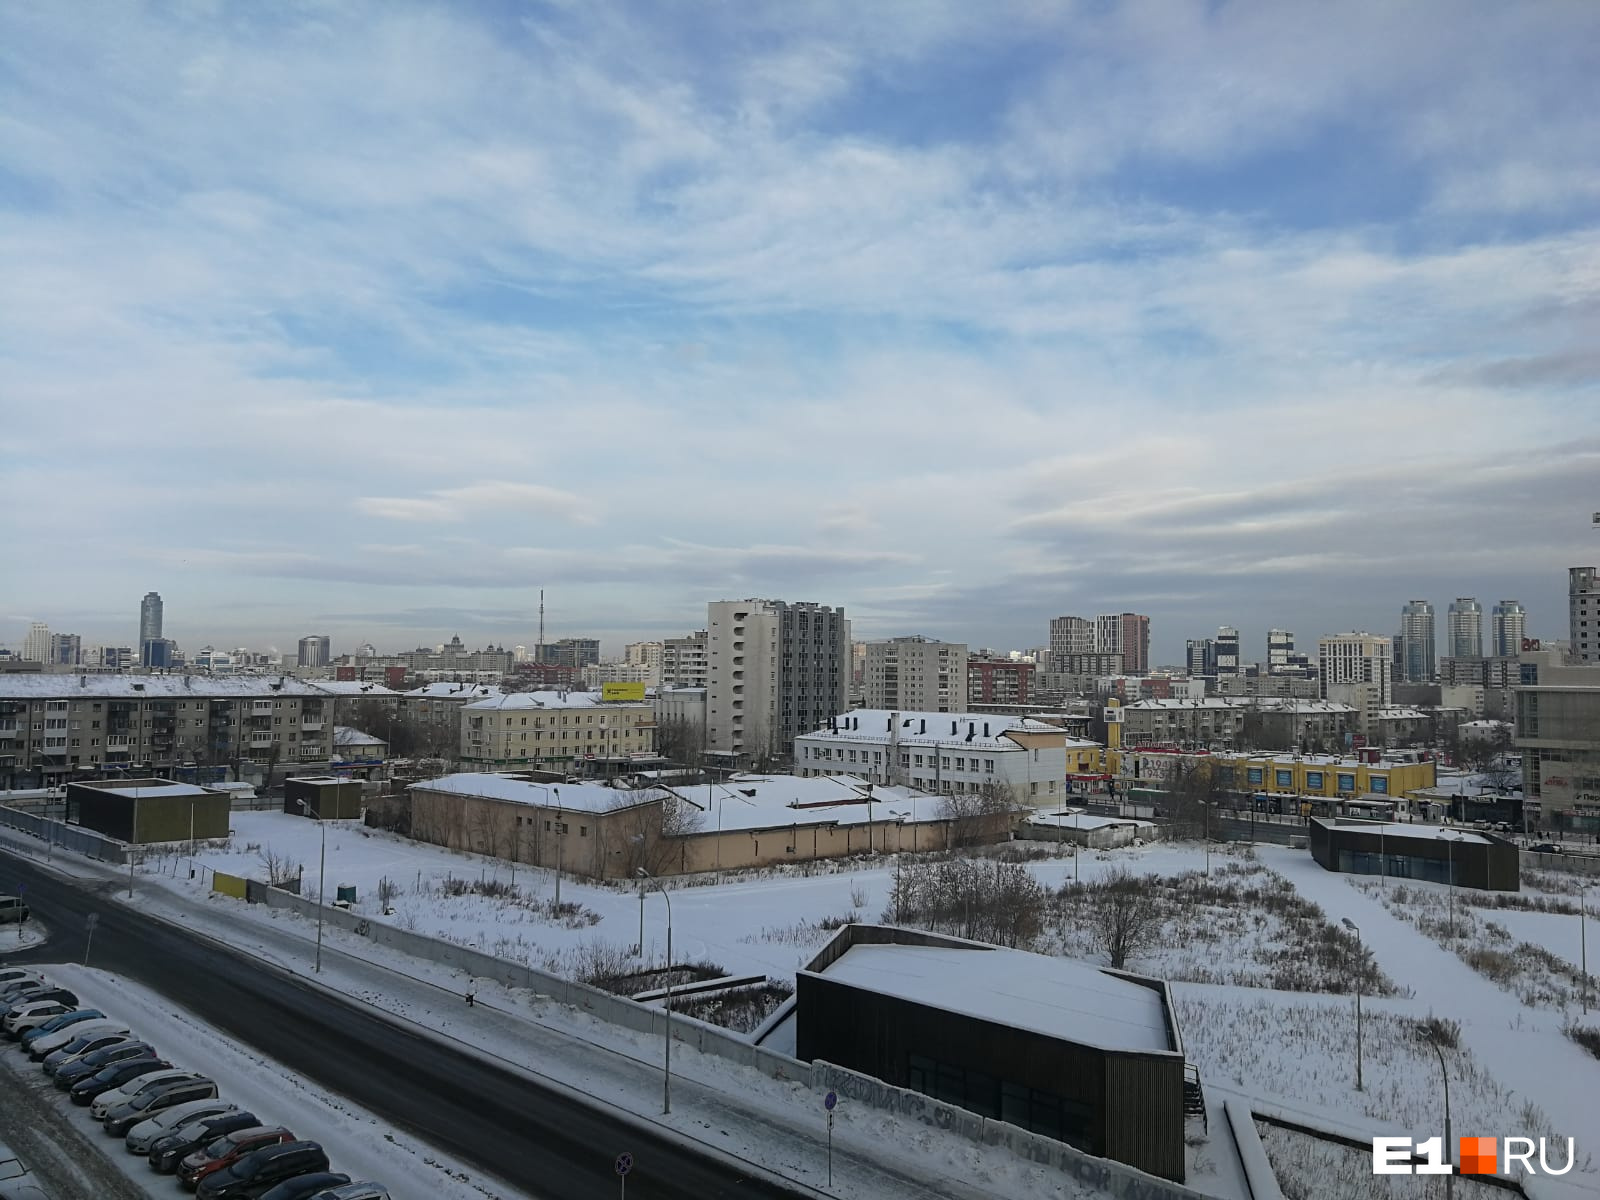 Депутат Дмитрий Сергин, курирующий Чкаловский район, попросил привести документы в порядок и запретить строительство многоэтажек